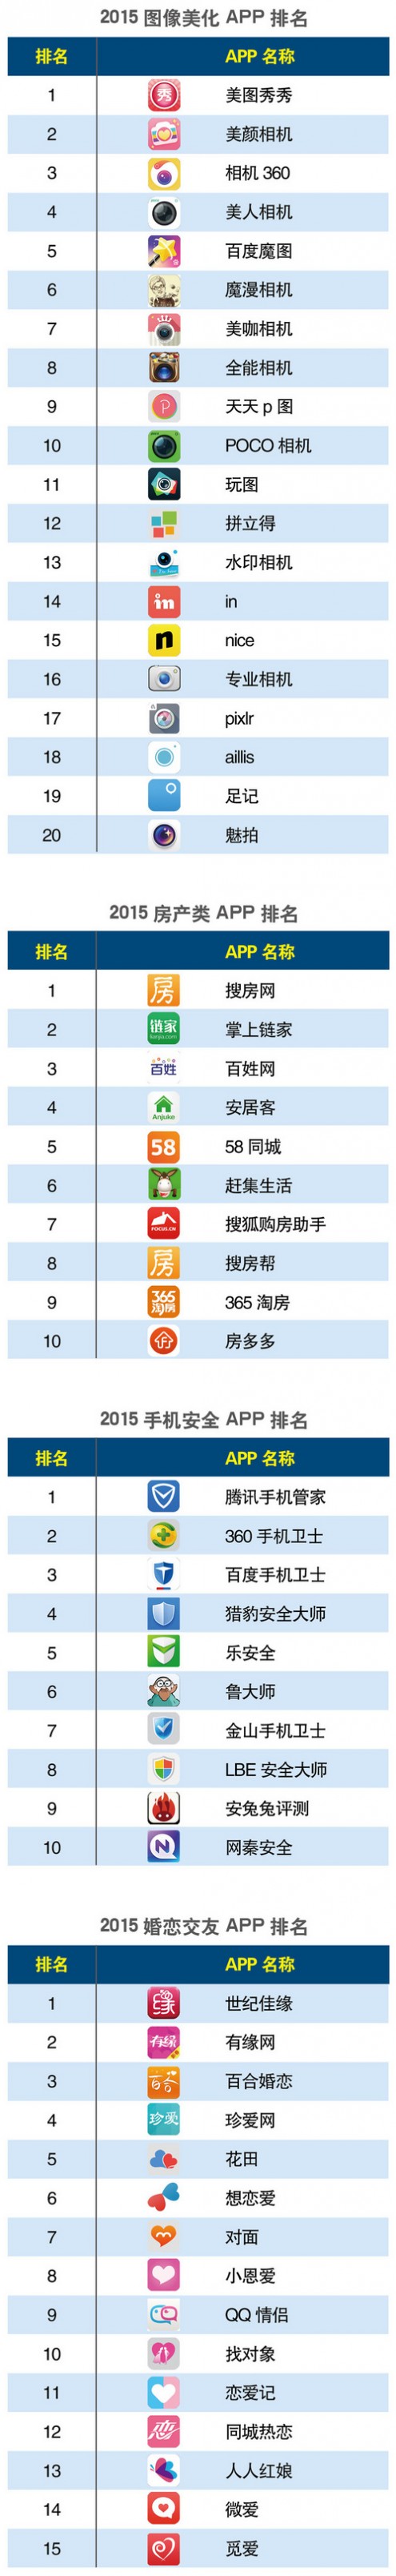 2015中国APP分类排行 APP排名 手机浏览器排名 新闻资讯排名 音乐APP排名